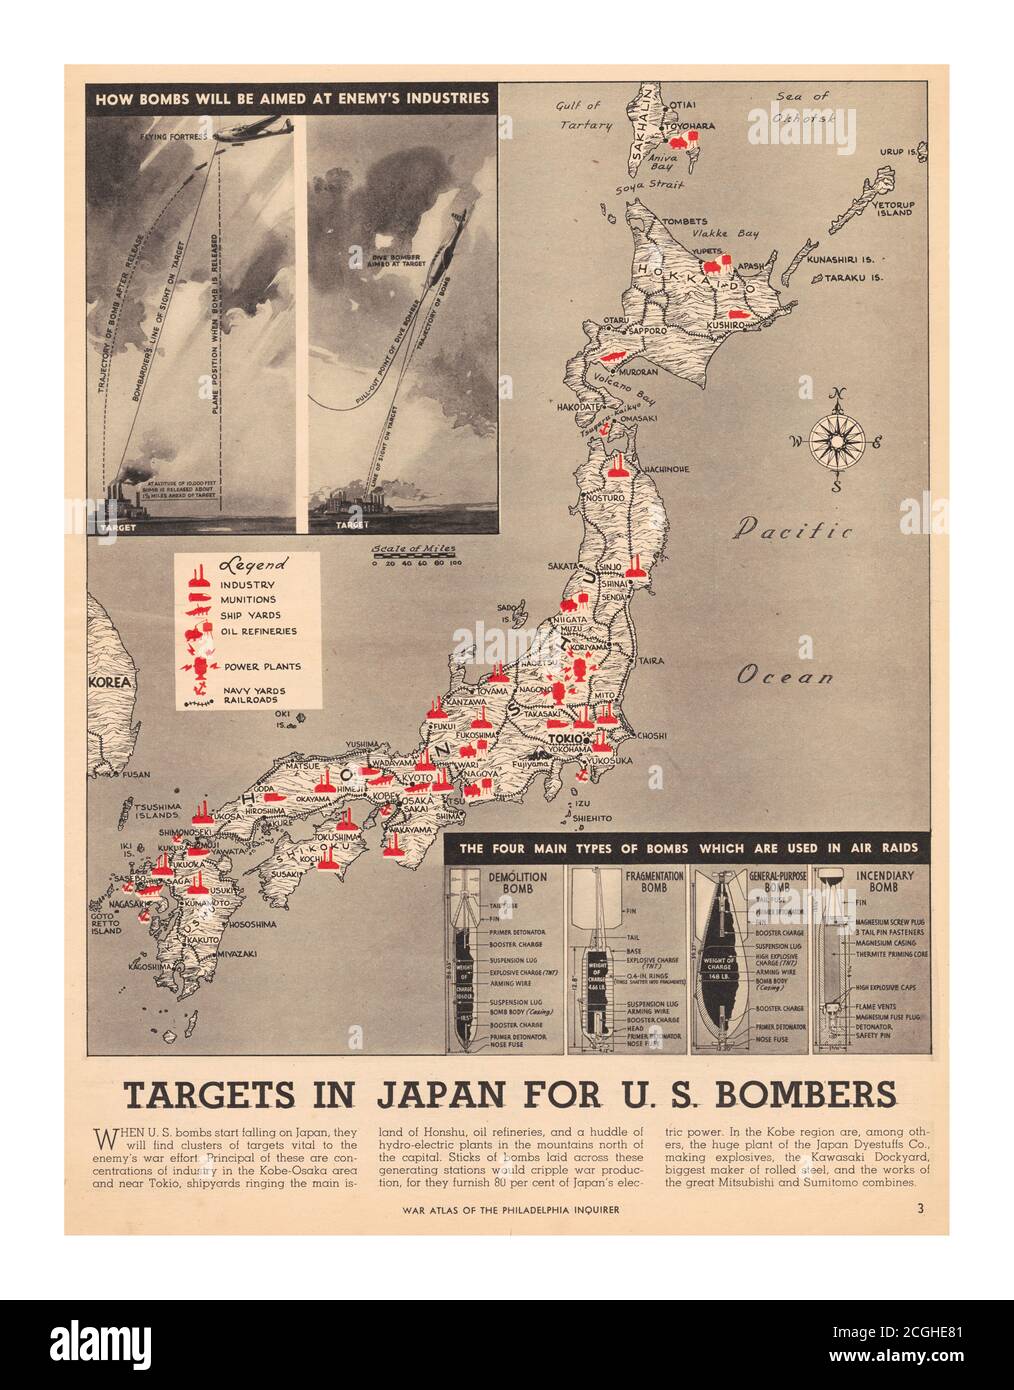 WW2 Propaganda mappa da un atlante di guerra pubblicato dal Philadelphia Inquirer Weeks After Pearl Harbor, che riflette e sostiene l'umore del paese. "Quando le bombe statunitensi iniziano a cadere sul Giappone, troveranno gruppi di obiettivi vitali per lo sforzo bellico del nemico." Questi obiettivi, di colore rosso brillante, effettivamente riempire il paesaggio della patria giapponese, etichettato industria, munizioni, cantieri navali, ecc in realtà, gli Stati Uniti erano a più di un anno di distanza anche dal Doolittle RAID a Tokyo, Che ha aumentato il morale americano ma non ha avuto praticamente alcun impatto sullo sforzo bellico giapponese. Le bombe statunitensi non hanno iniziato 'fallin Foto Stock